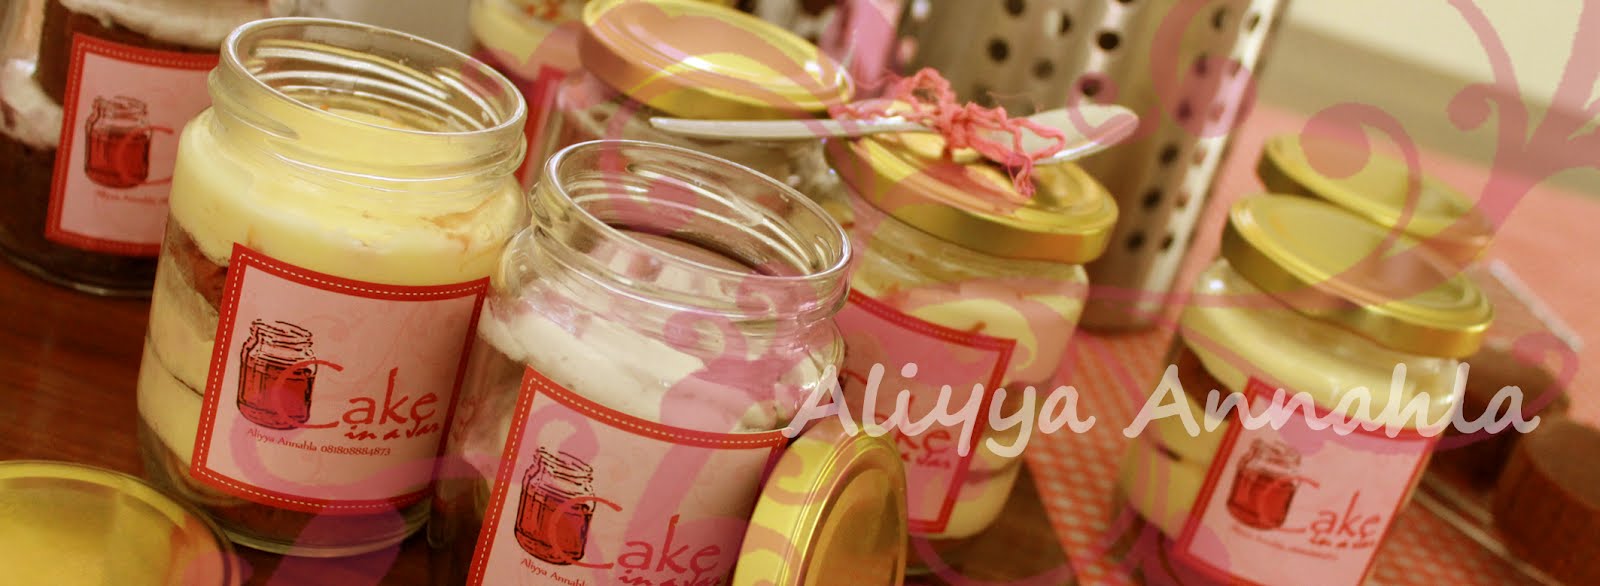 Aliyya Annahla Cake in a Jar